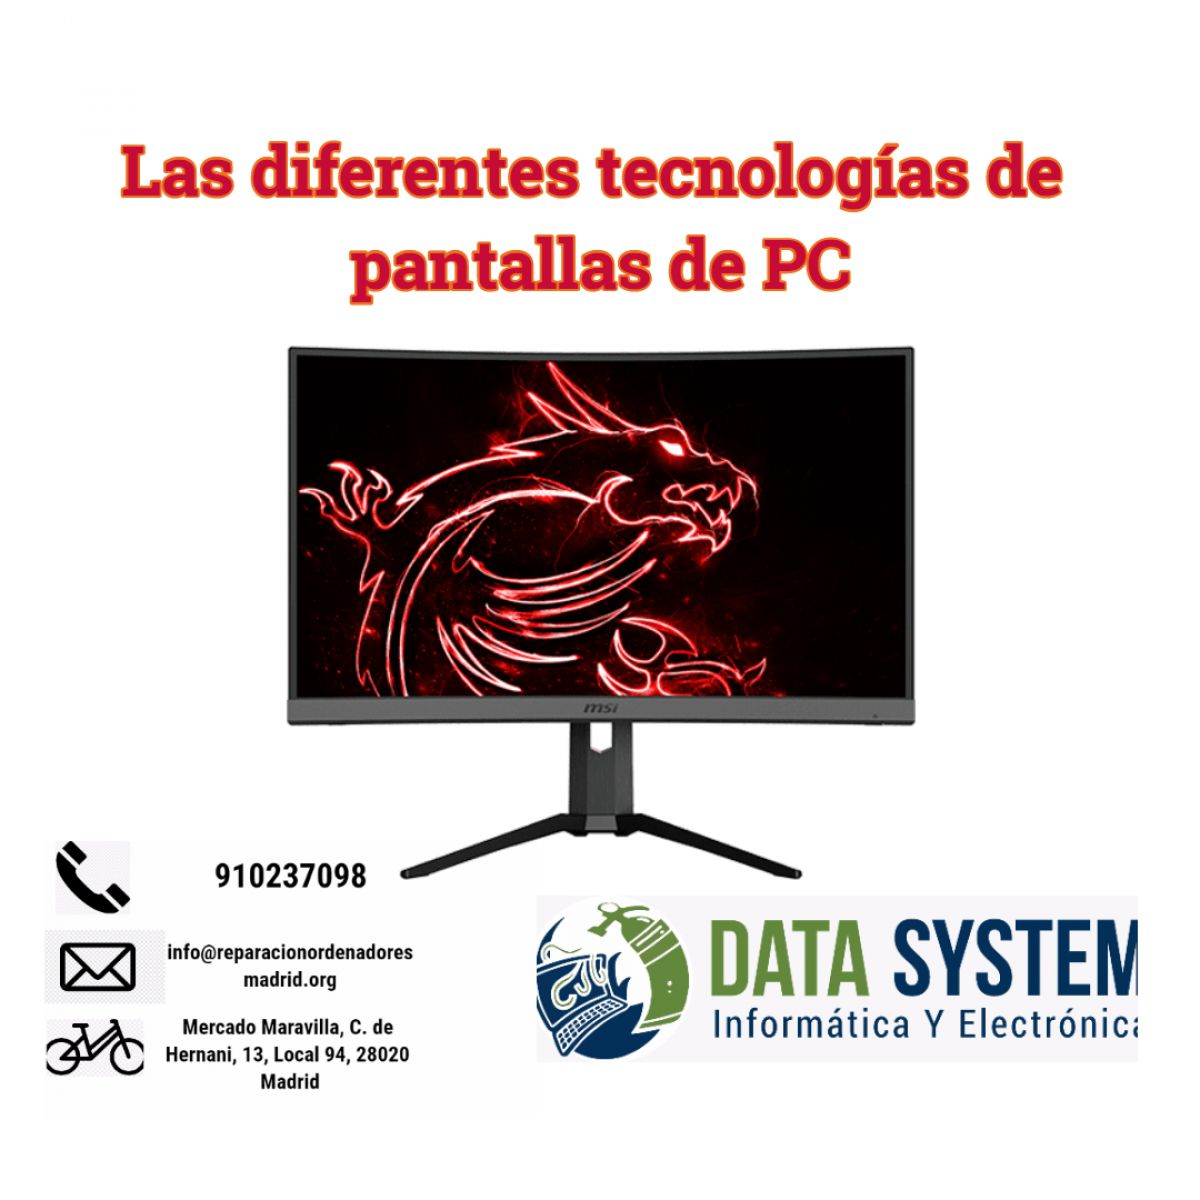 Las diferentes tecnologías de pantallas de PC